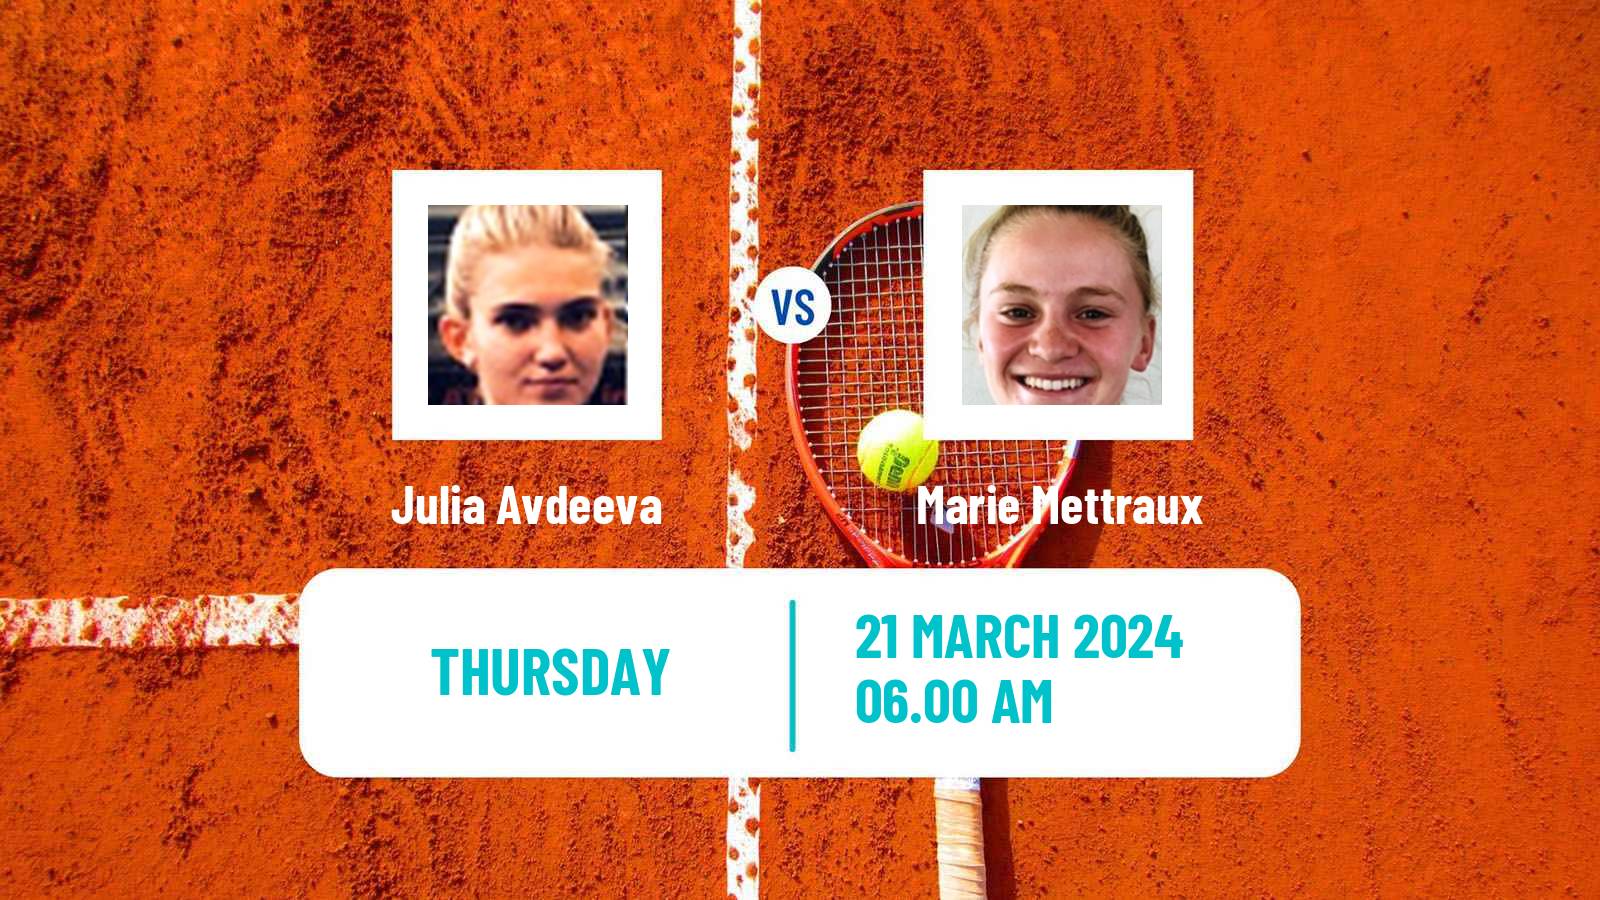 Tennis ITF W15 Antalya 6 Women Julia Avdeeva - Marie Mettraux